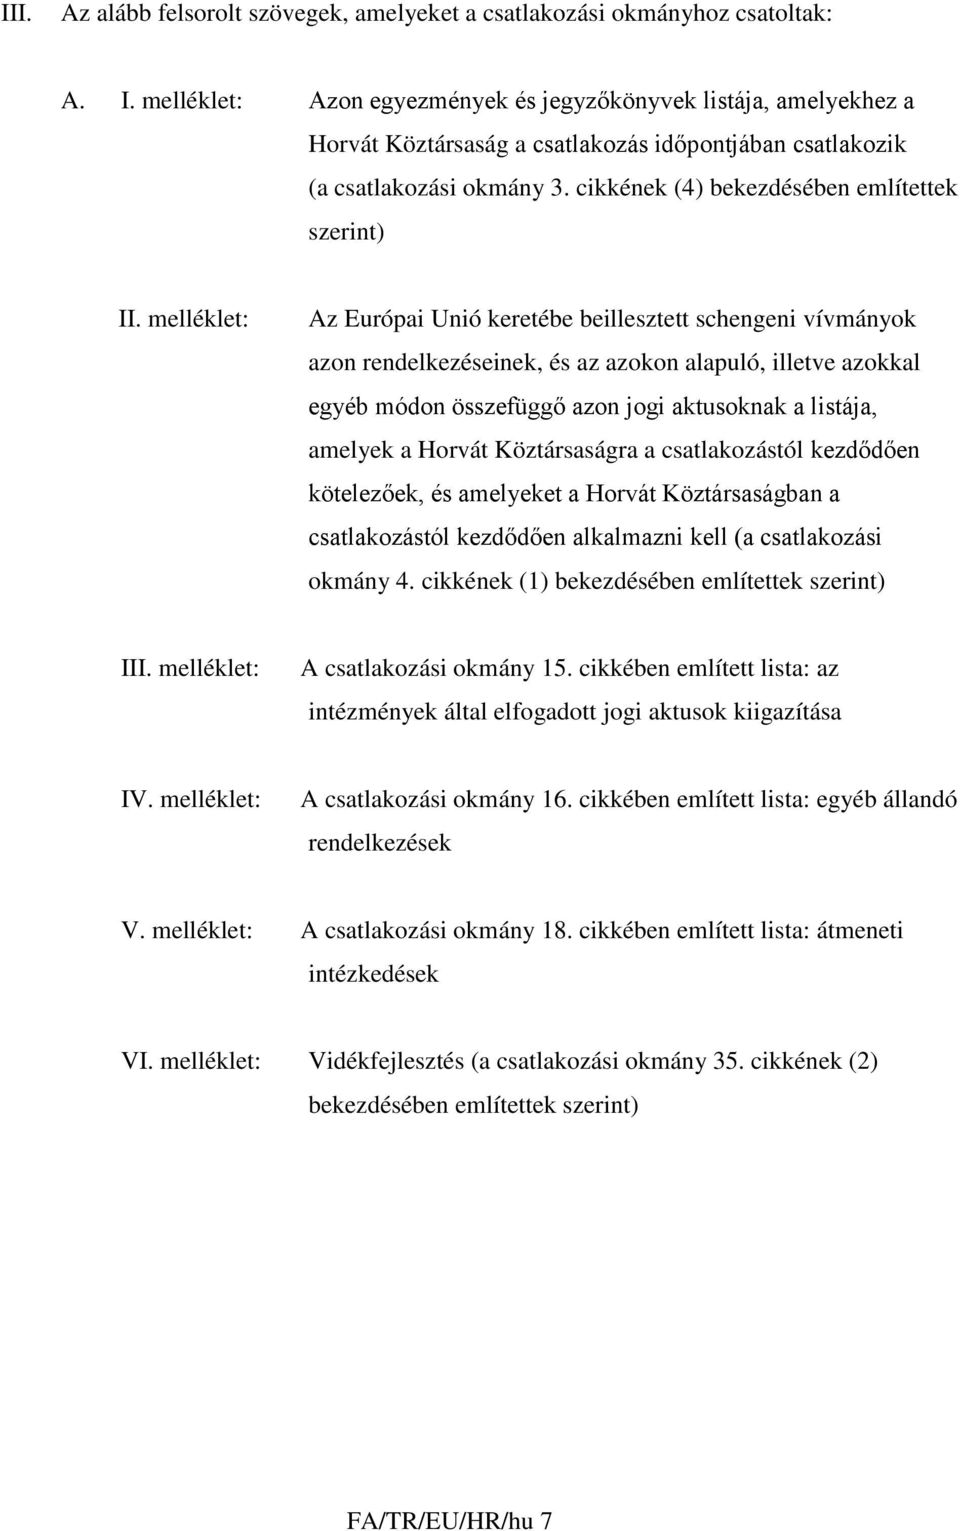 melléklet: Az Európai Unió keretébe beillesztett schengeni vívmányok azon rendelkezéseinek, és az azokon alapuló, illetve azokkal egyéb módon összefüggő azon jogi aktusoknak a listája, amelyek a